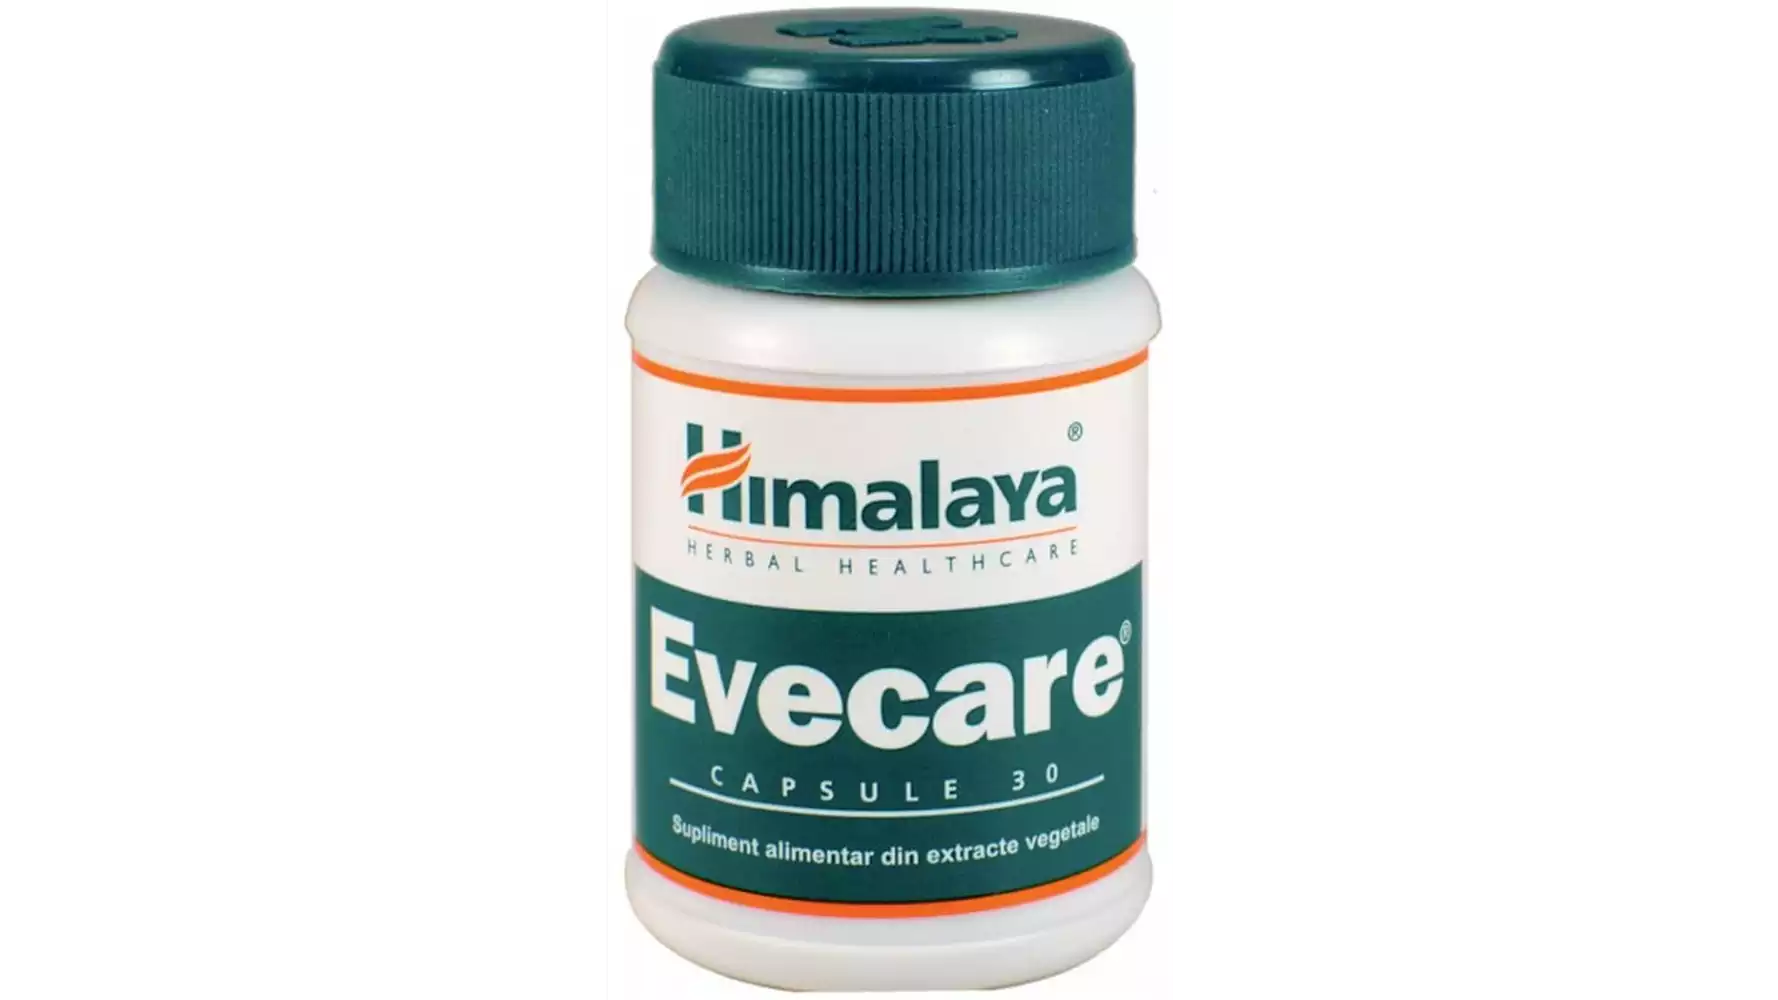 Himalaya Evecare Capsule (30caps)